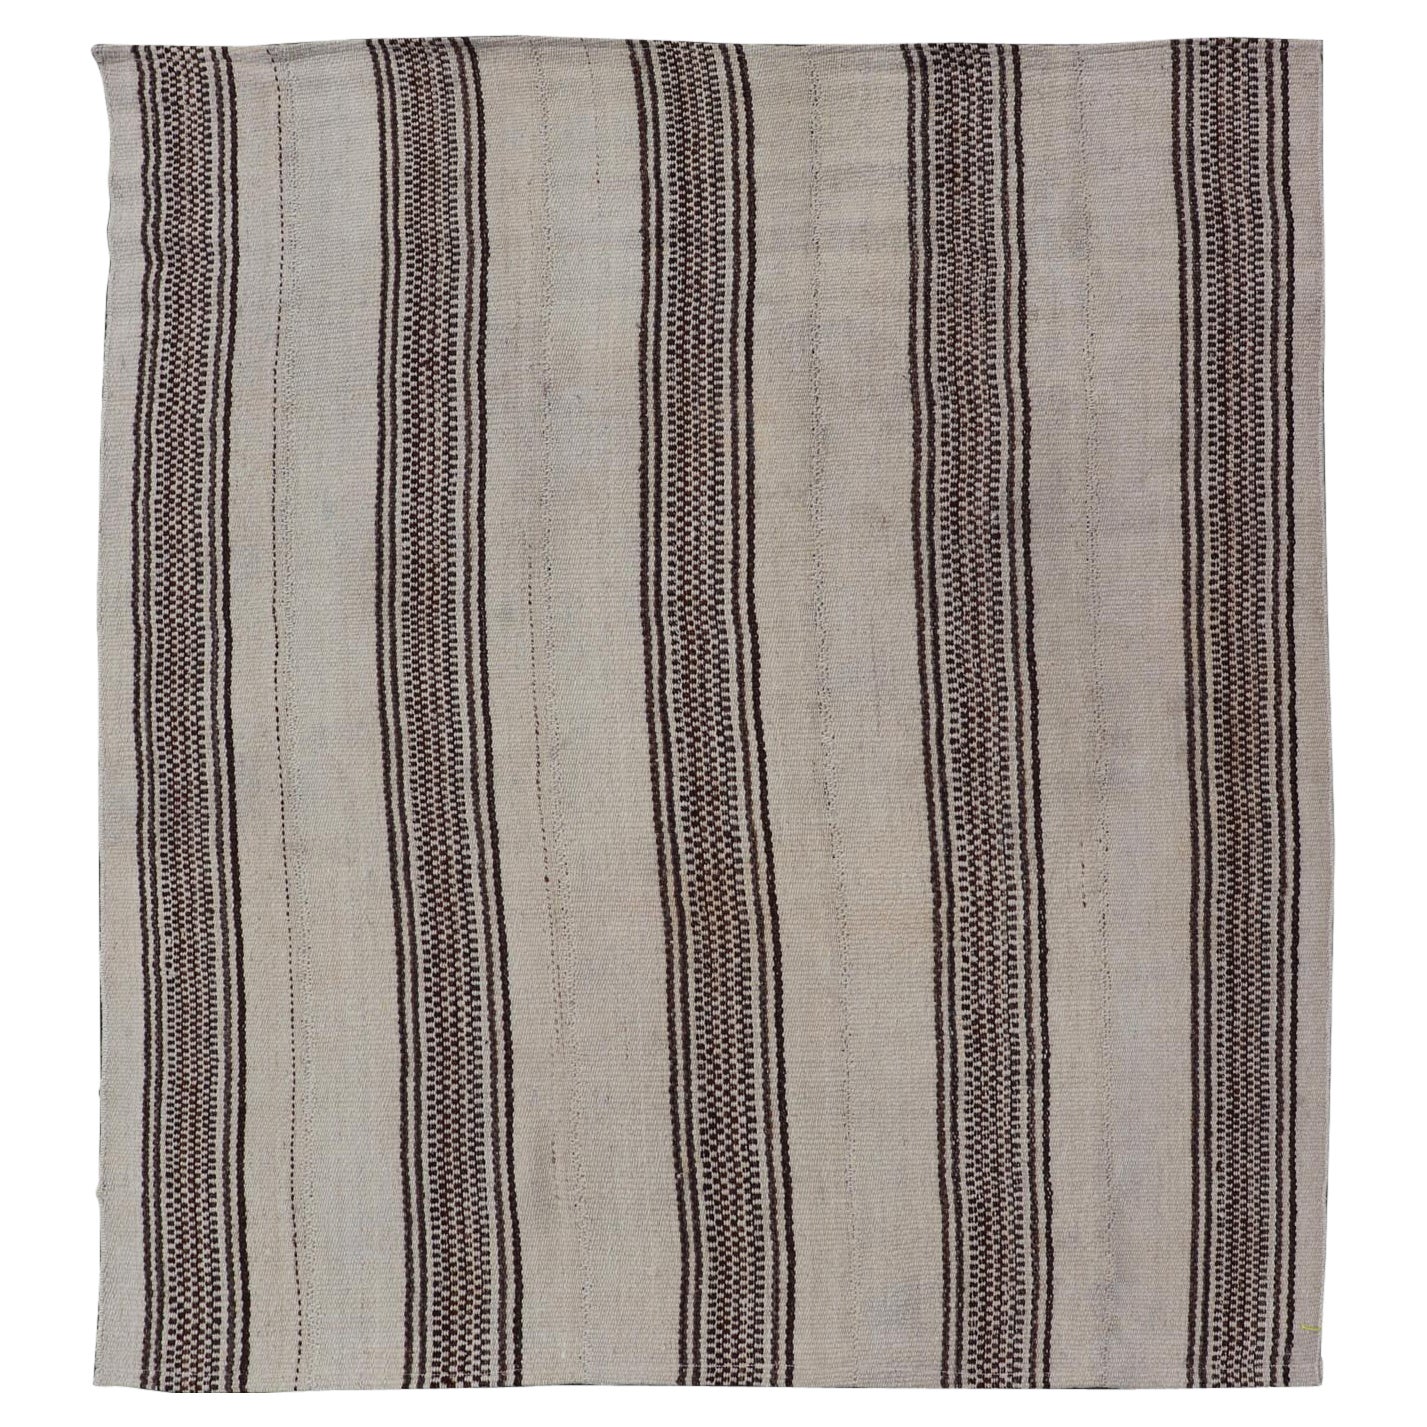 Türkischer Vintage-Flachgewebe-Teppich im Streifendesign in Braun und Elfenbein 